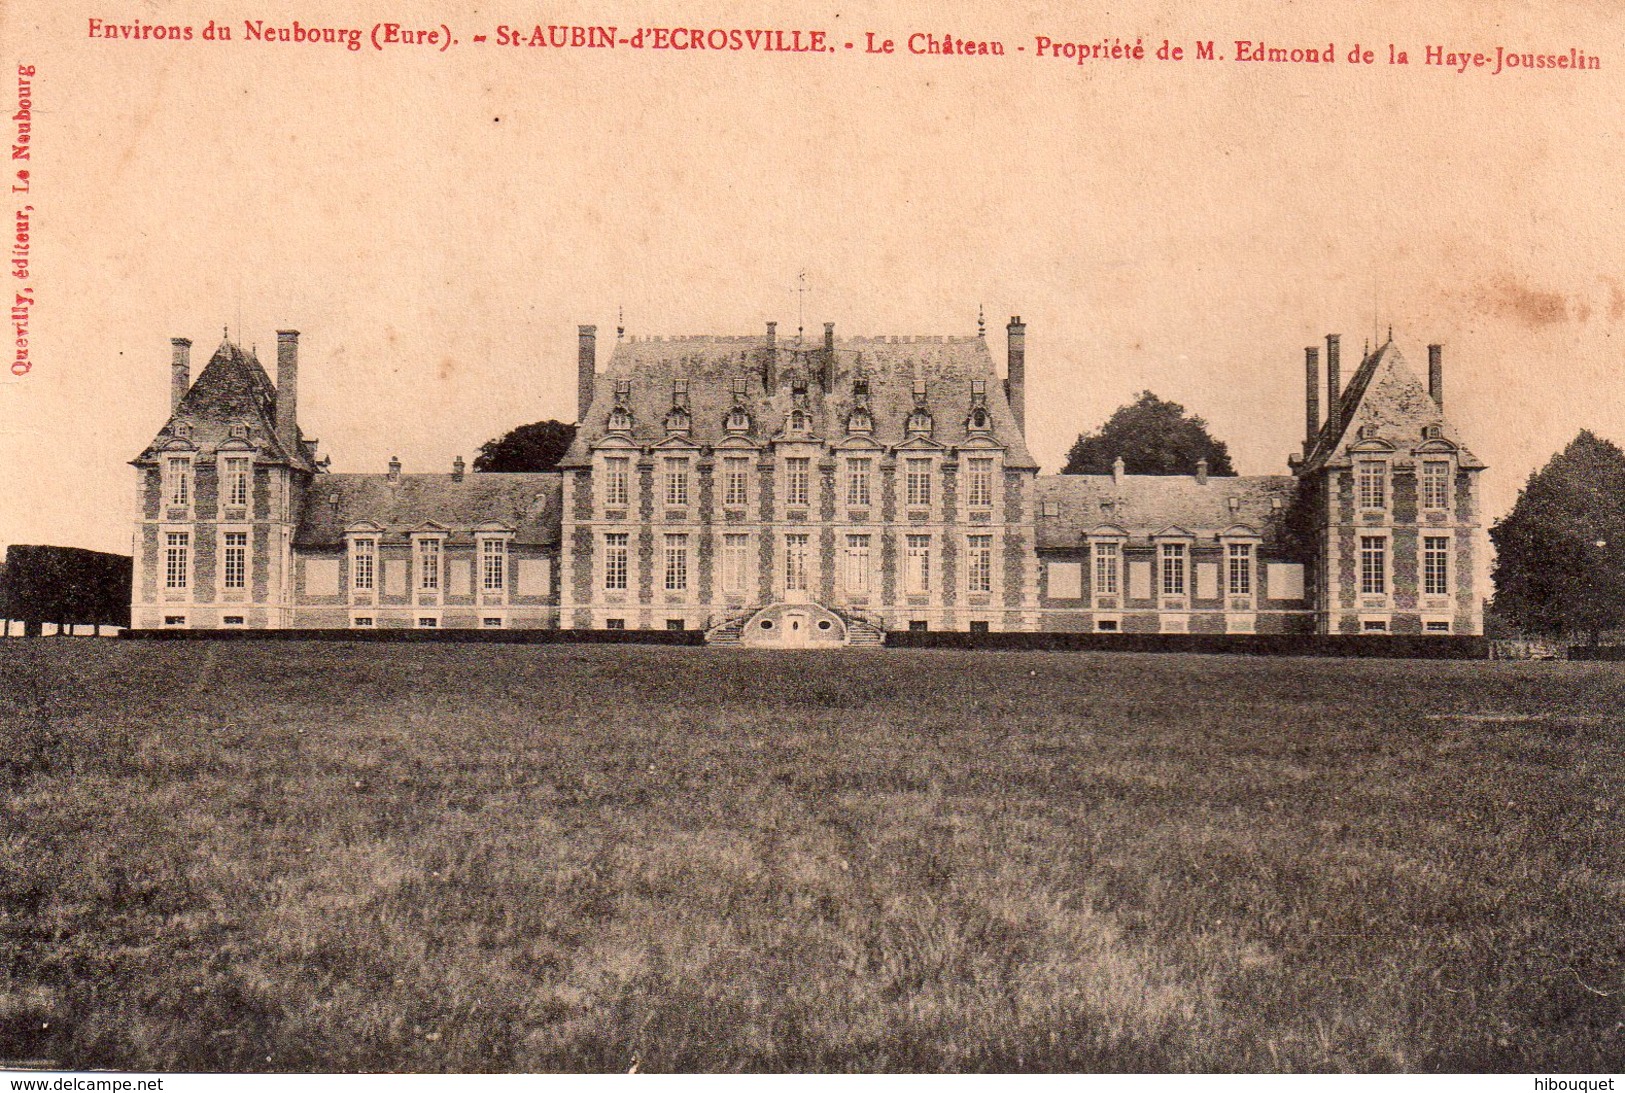 CPA, Environs Du Neubourg, St Aubin D'Ecrosville, Le Château Propriété De M. Edmond De La Haye-Jousselin - Saint-Aubin-d'Ecrosville